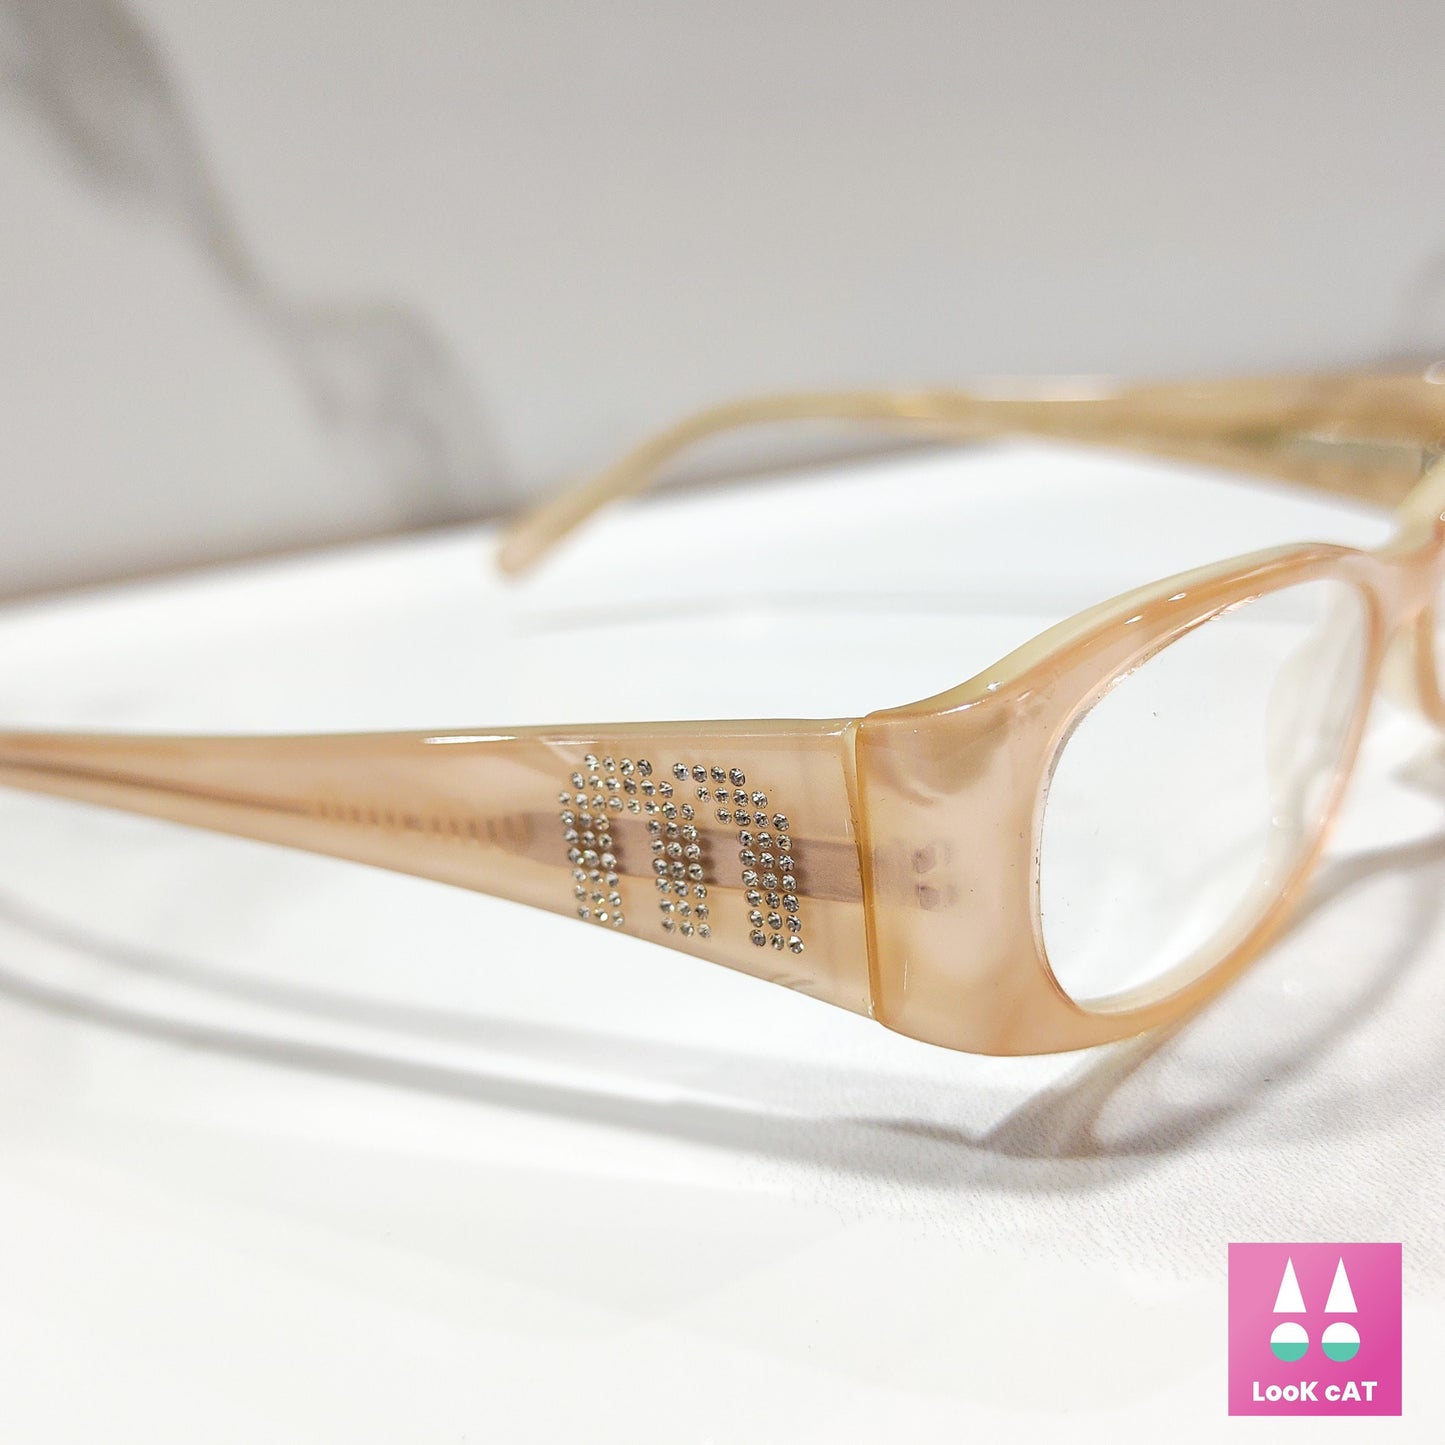 Miu Miu SMU VMU 03F occhiali da vista montatura lunetta brille y2k anni '90 tonalità monogramma autentico designer